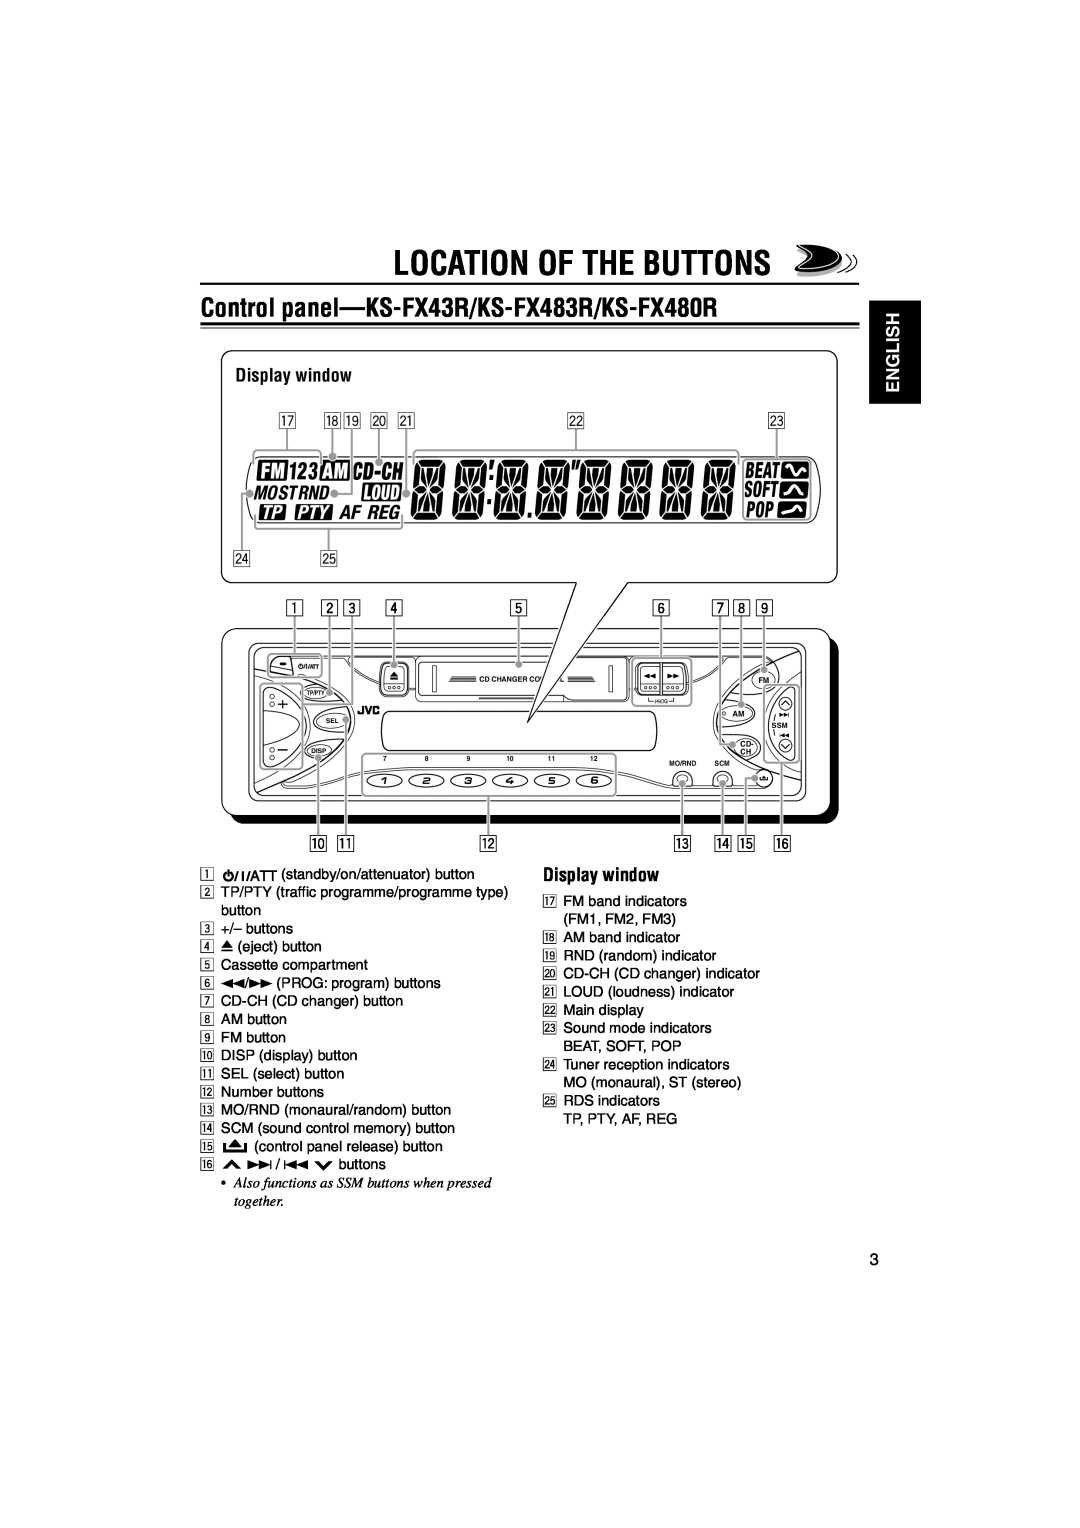 JVC KS-F383R, KS-F380R manual Location Of The Buttons, Control panel-KS-FX43R/KS-FX483R/KS-FX480R, Display window, English 